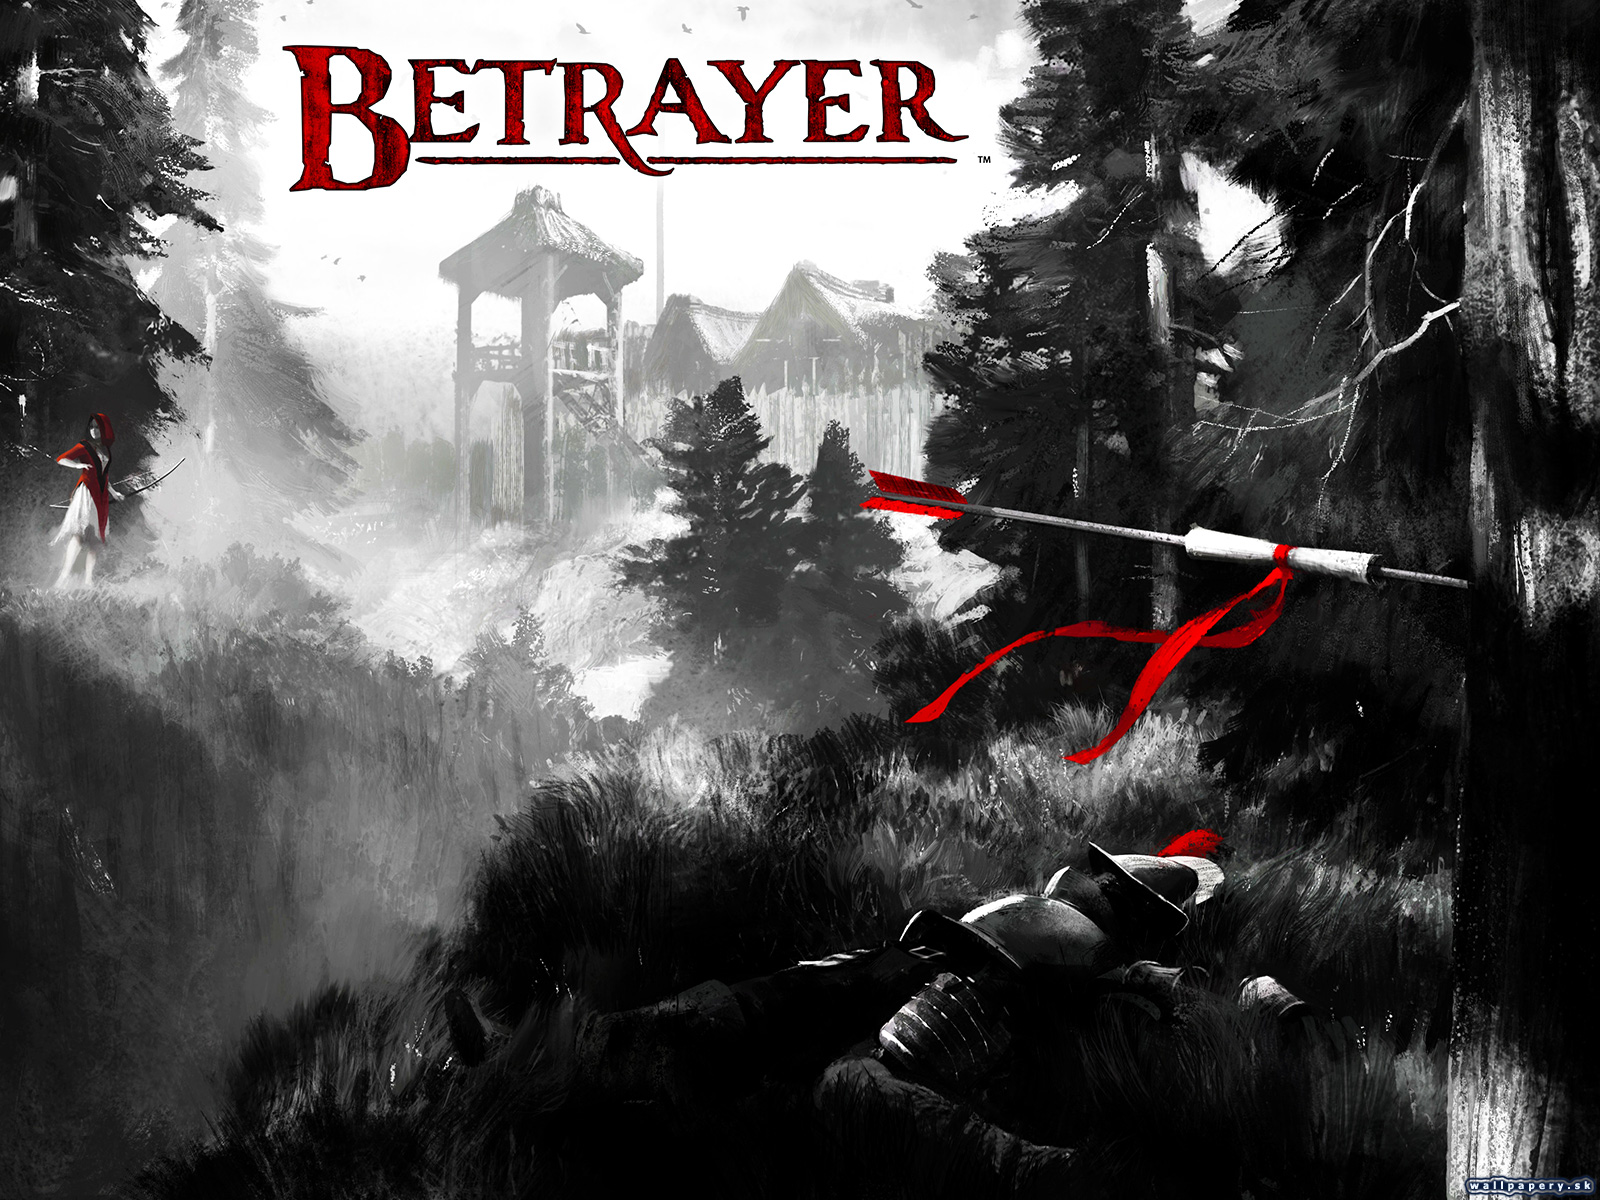 Betrayer - wallpaper 1